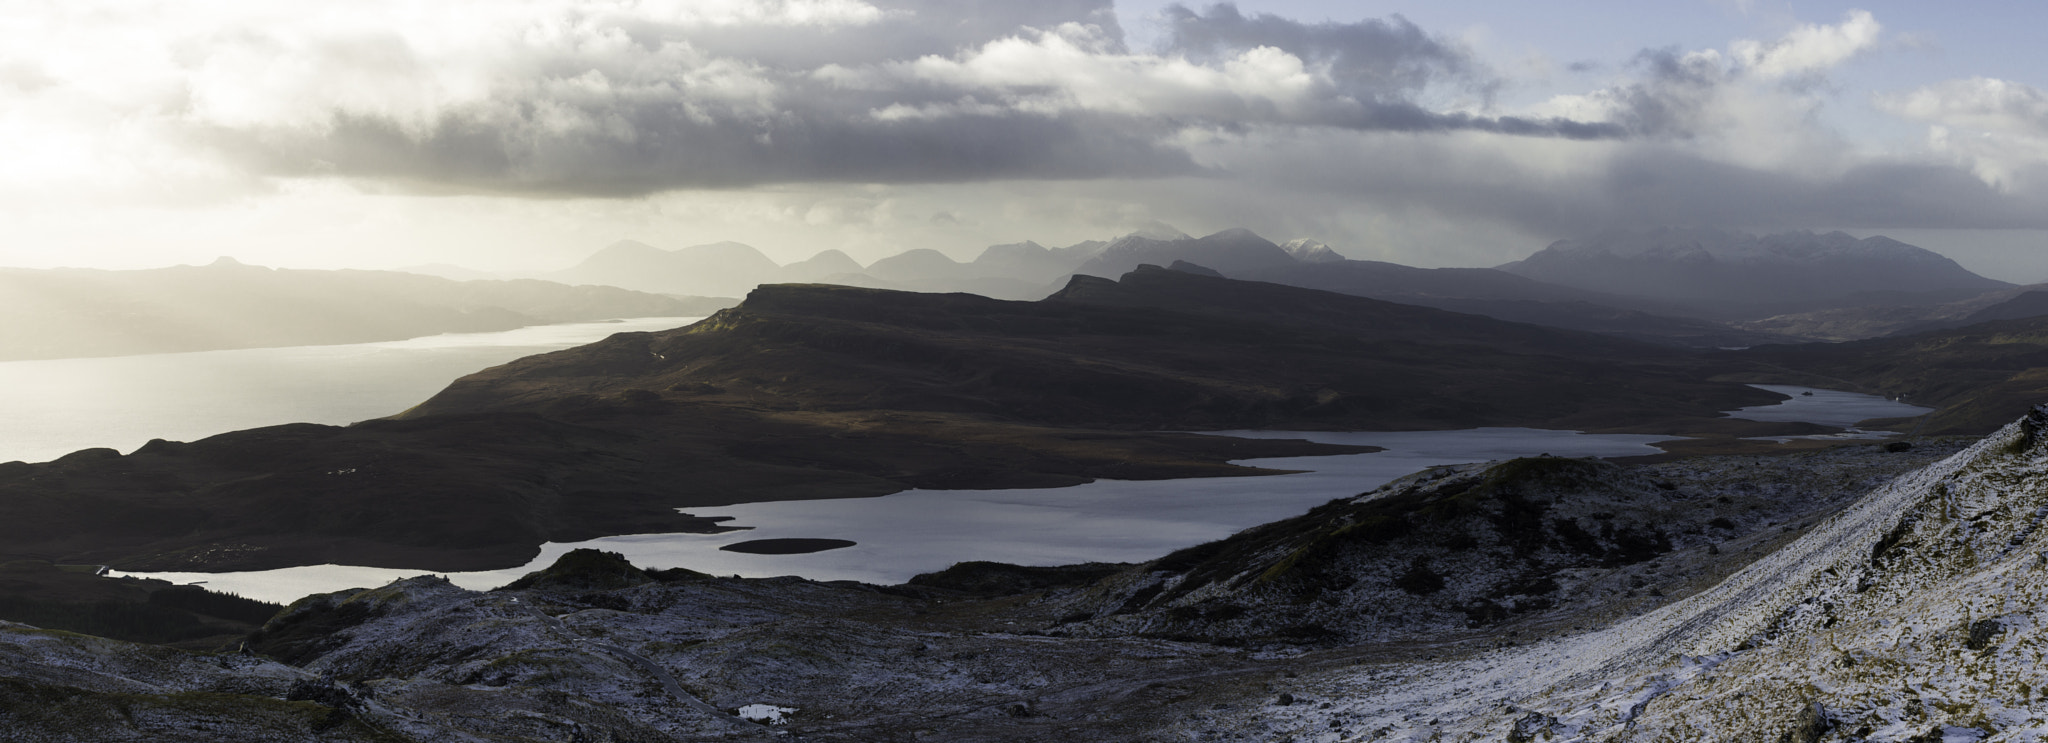 Nikon D810 sample photo. Scotland panorama photography